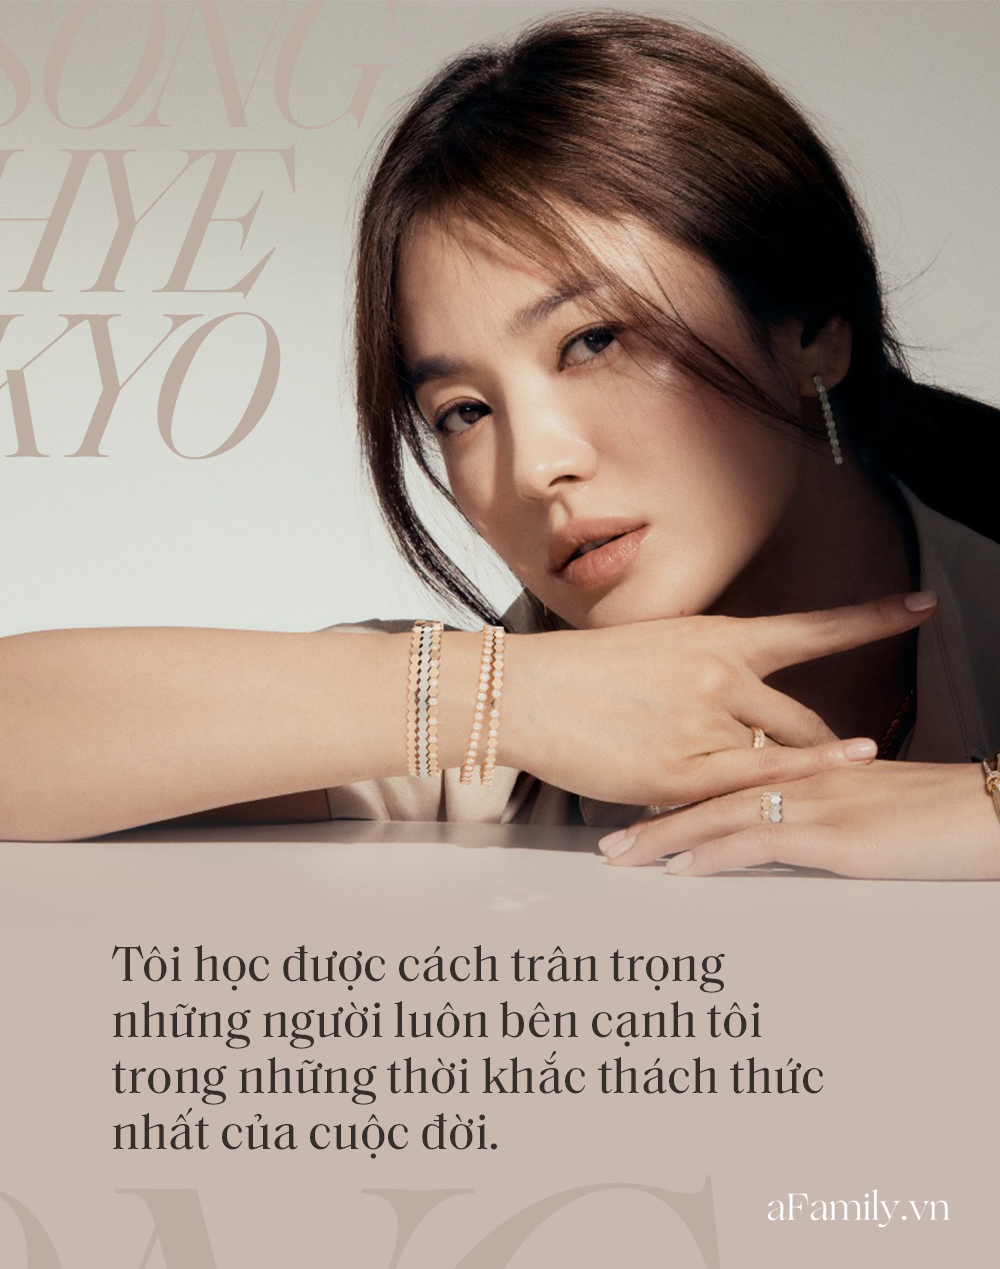 Song Hye Kyo đá xoáy chồng cũ Song Joong Ki trong bài phỏng vấn mới: Nhấn mạnh sự "phức tạp" tới 3 lần, khẳng định tình yêu phải được giữ gìn từ hai phía? - Ảnh 2.